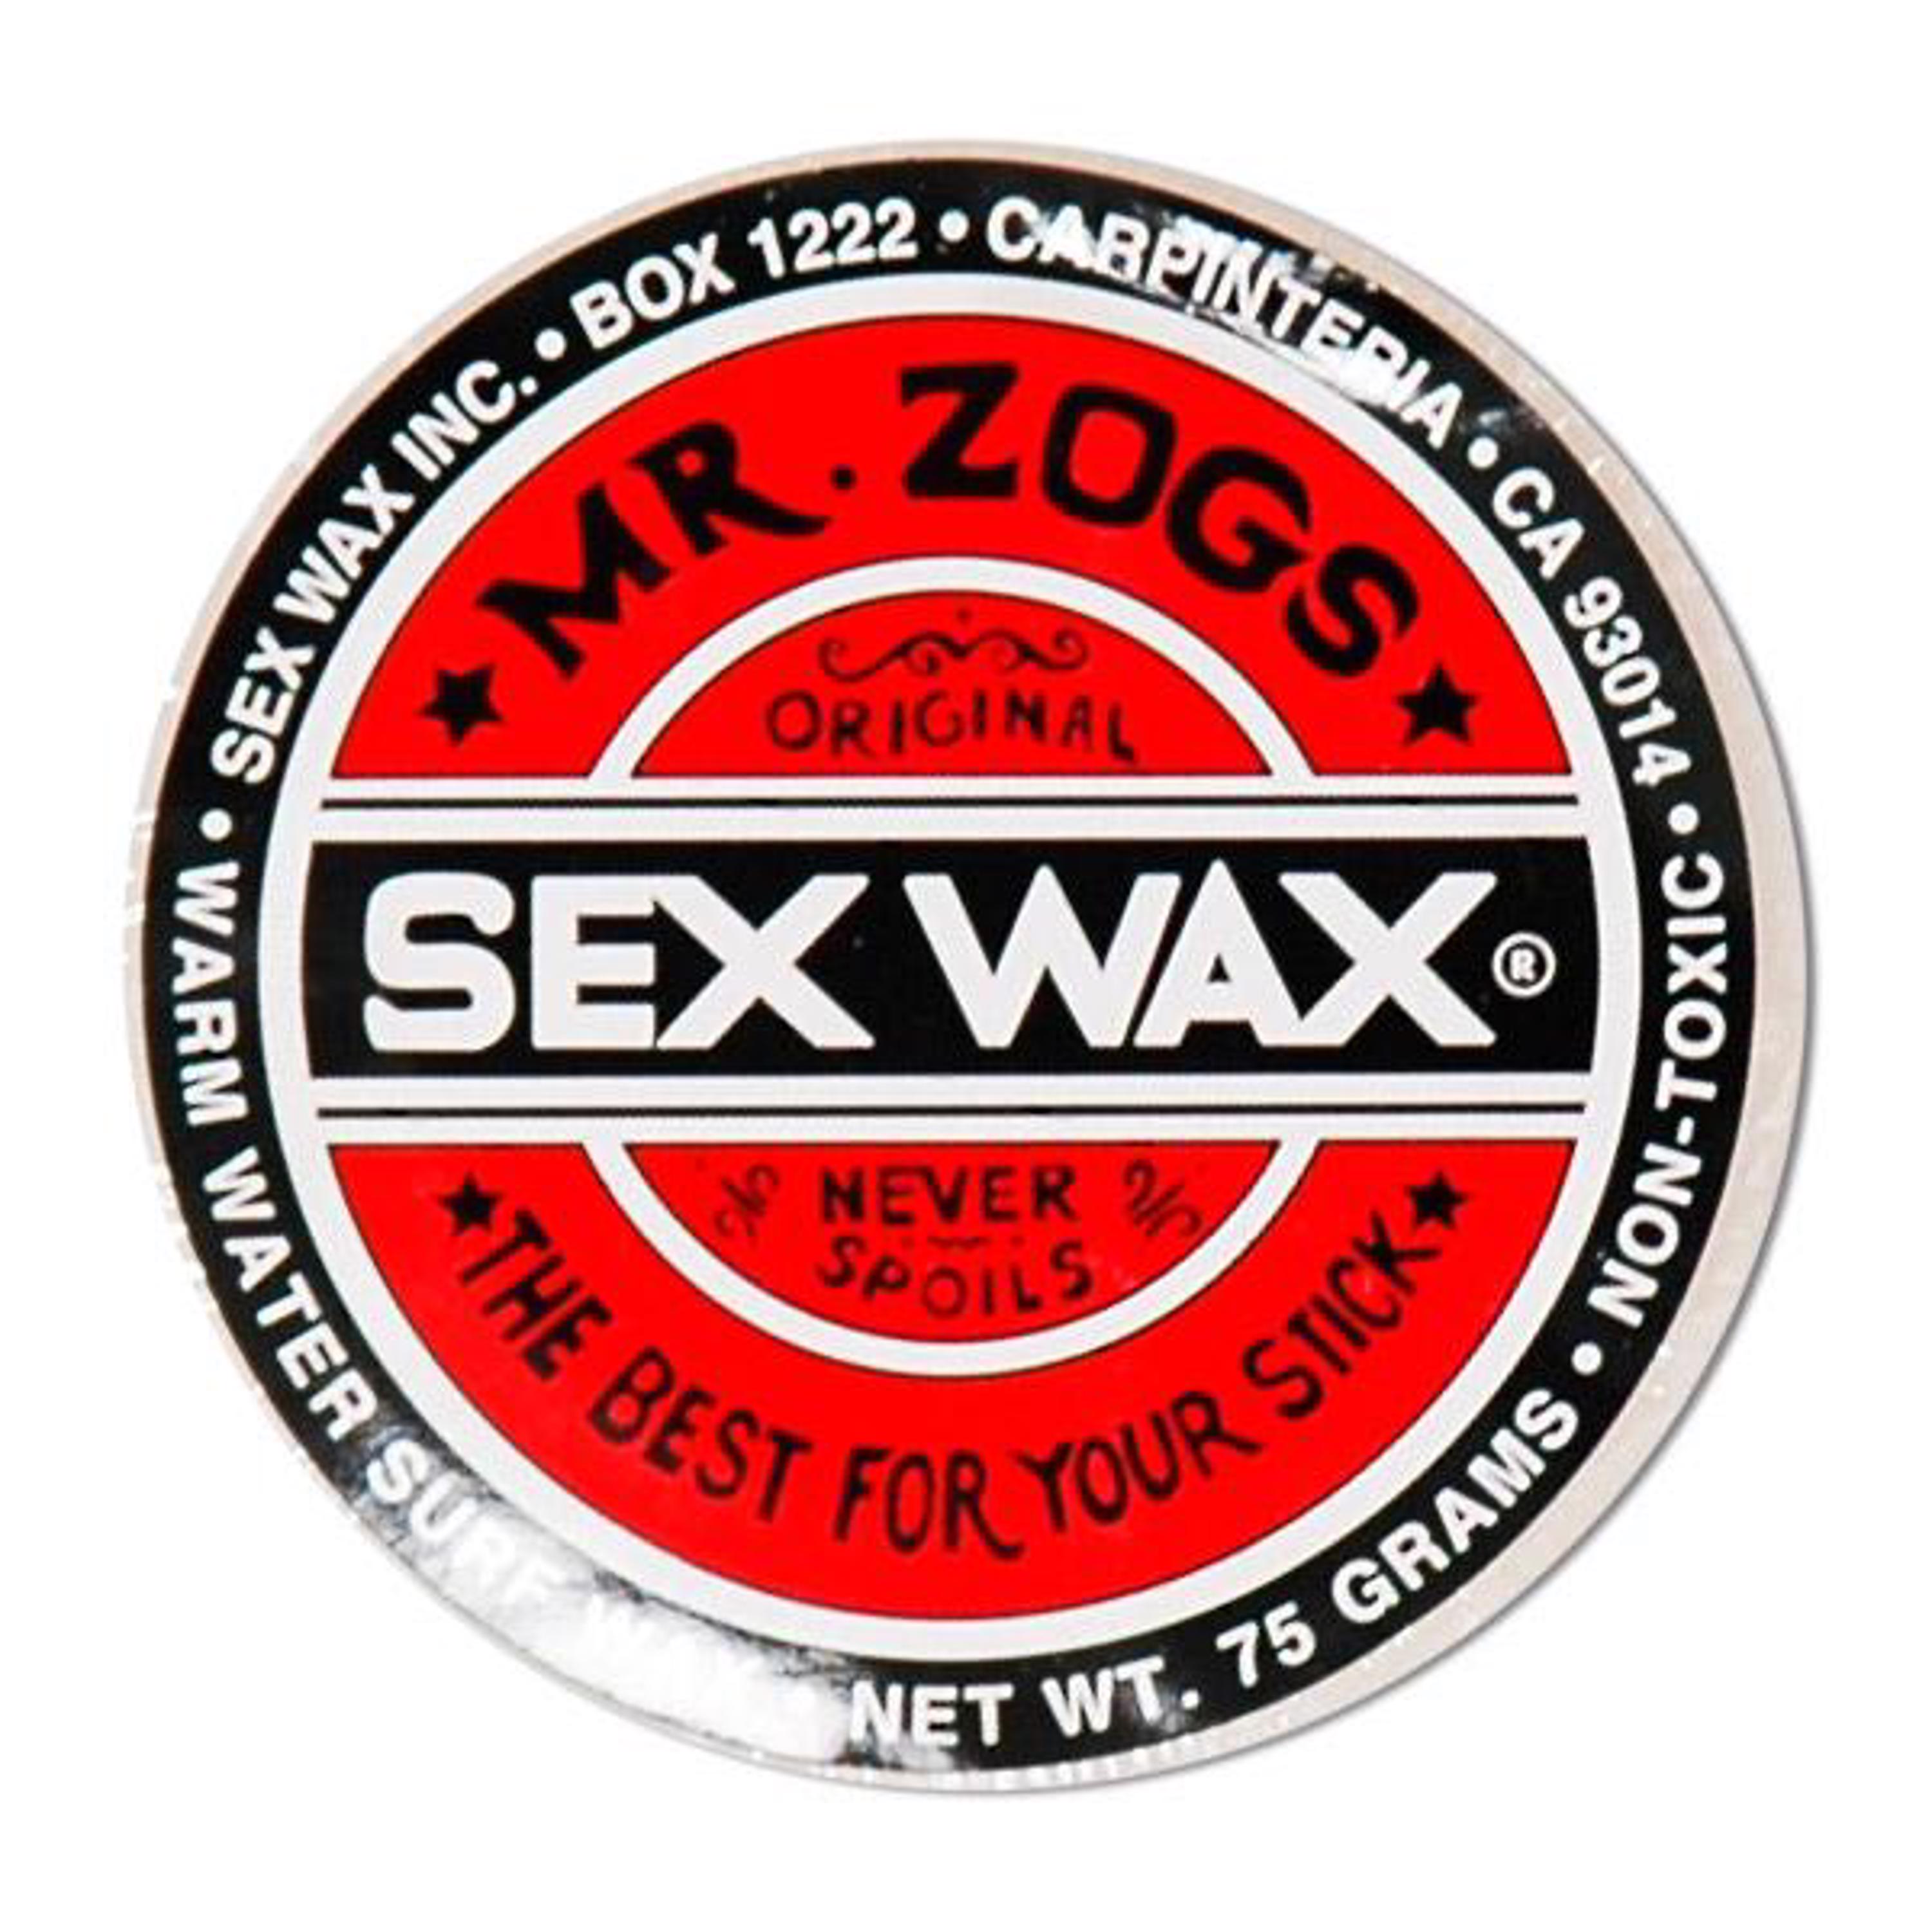 Mr. Zogs Sex Wax - Warm - Board Accessories